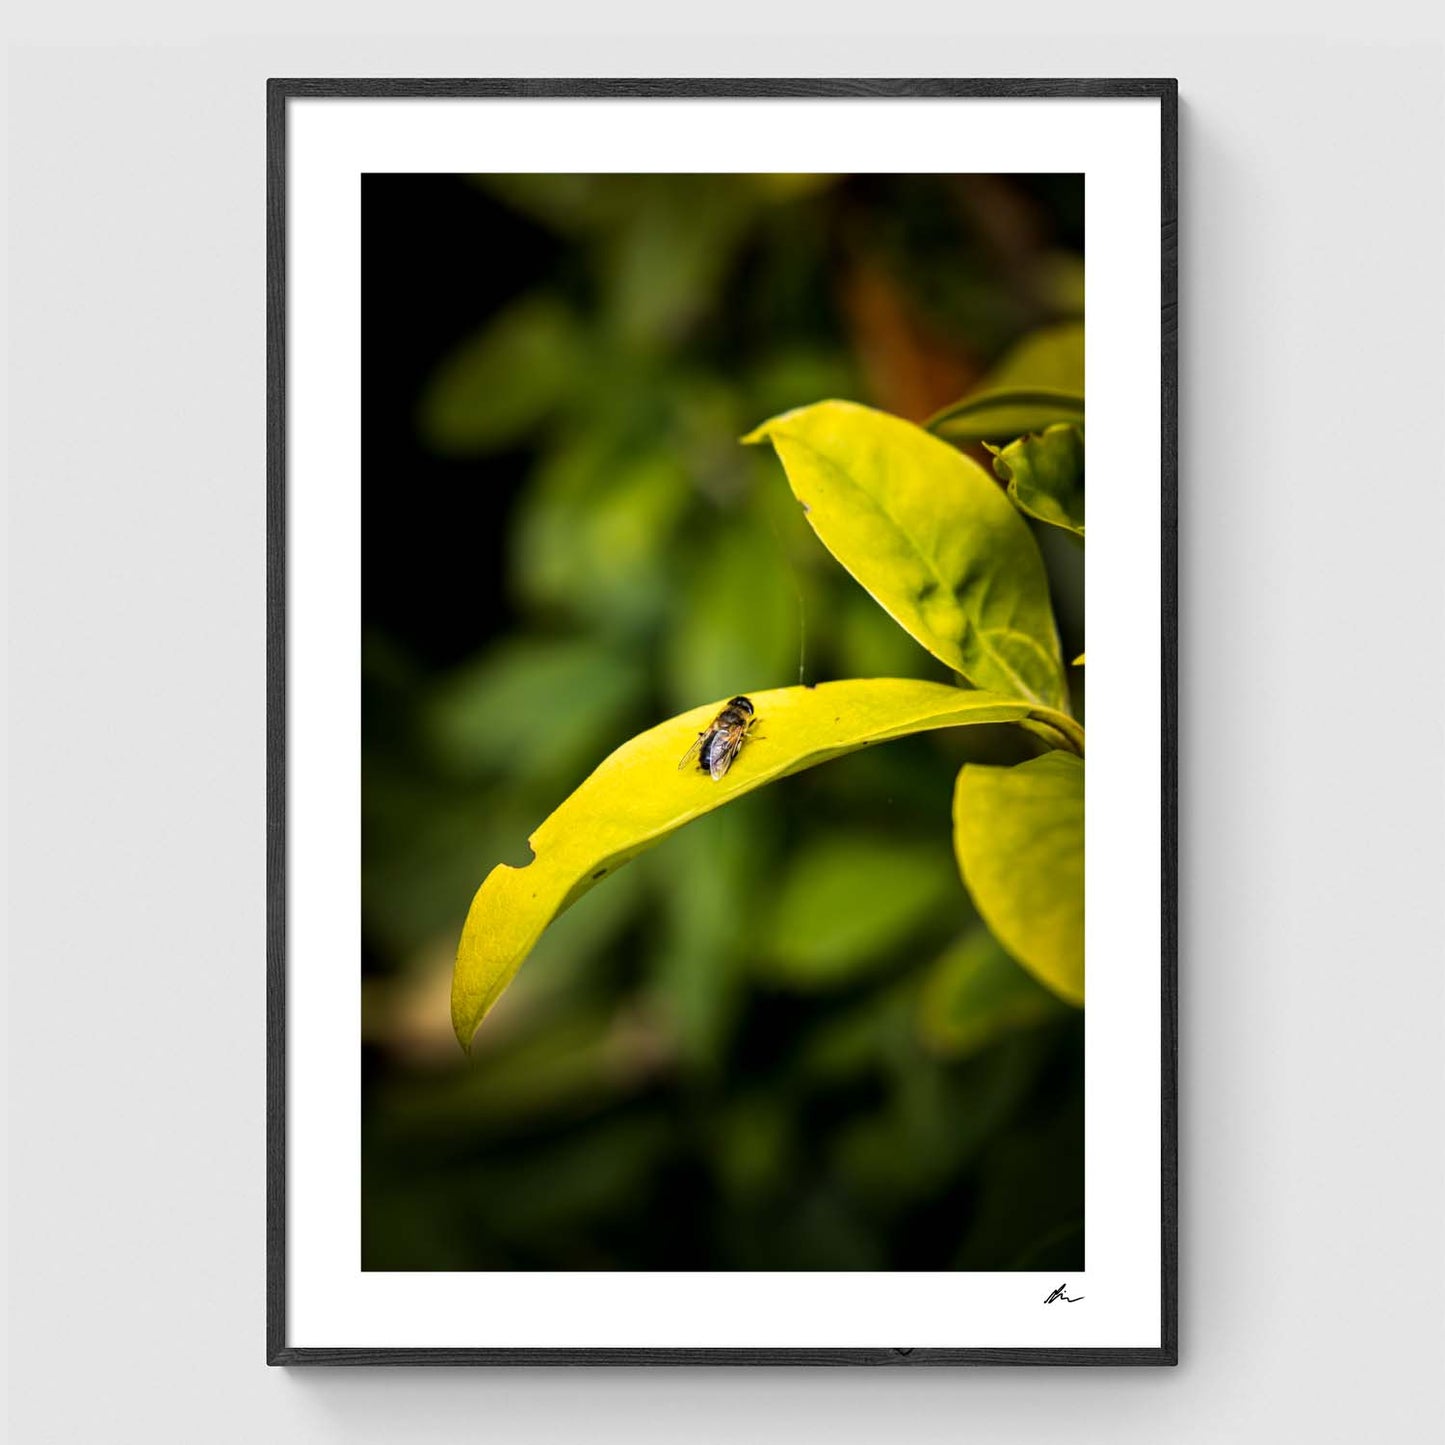 Bee on leaf